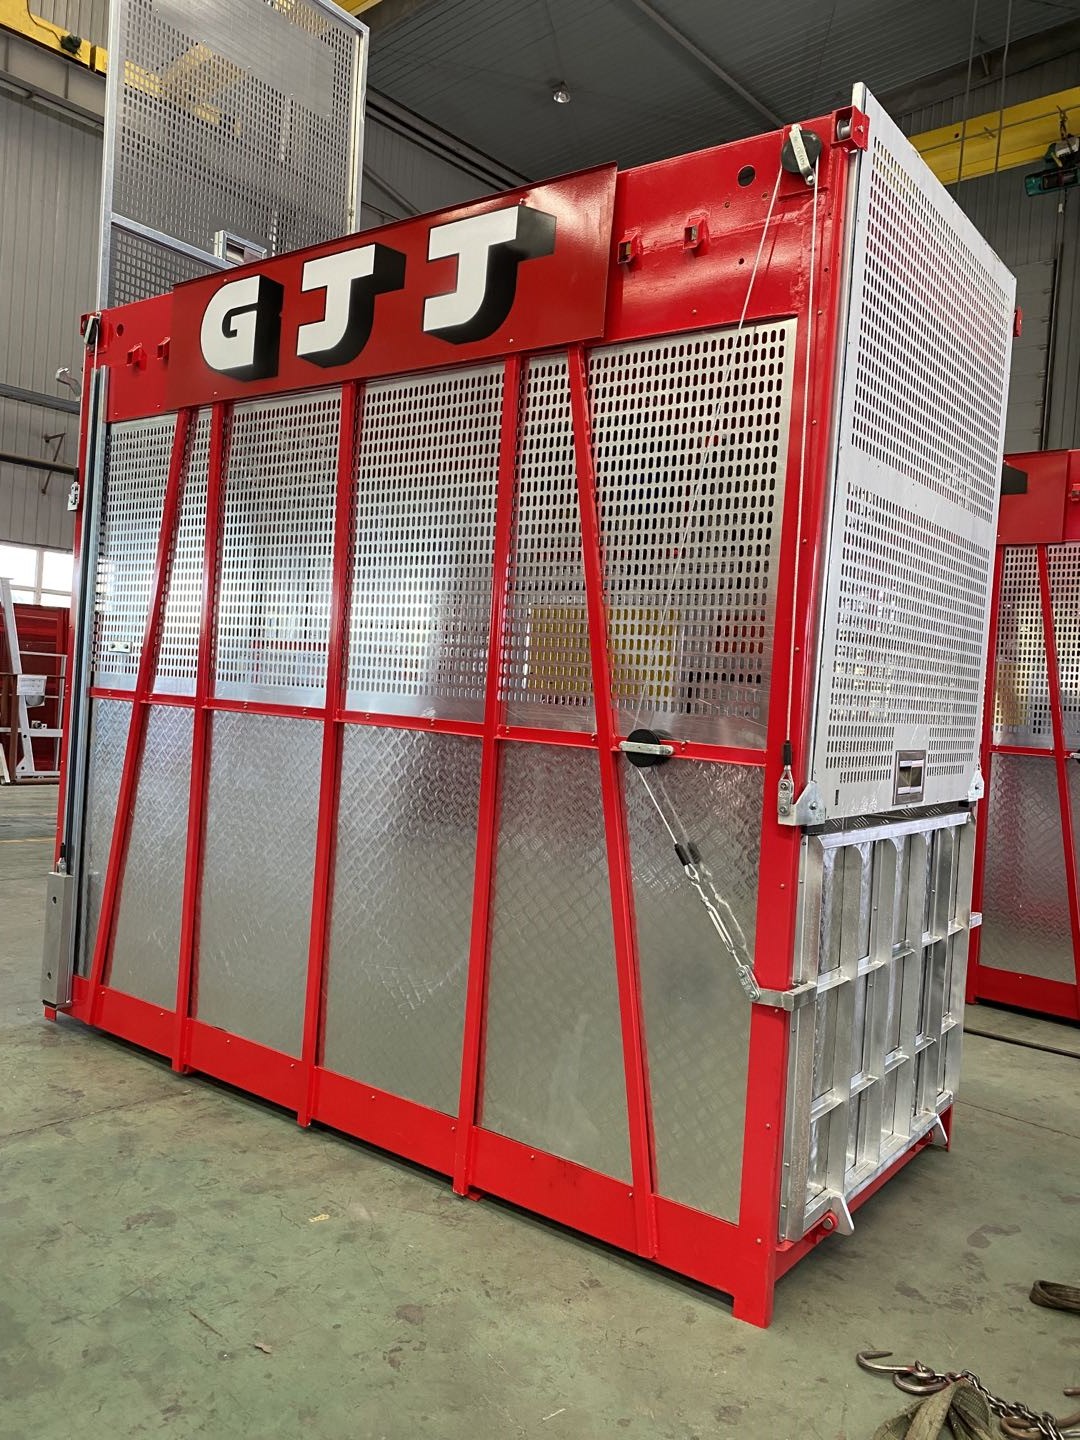 GJJ Construction Hoist , GJJ material Hoist - CPTC-China